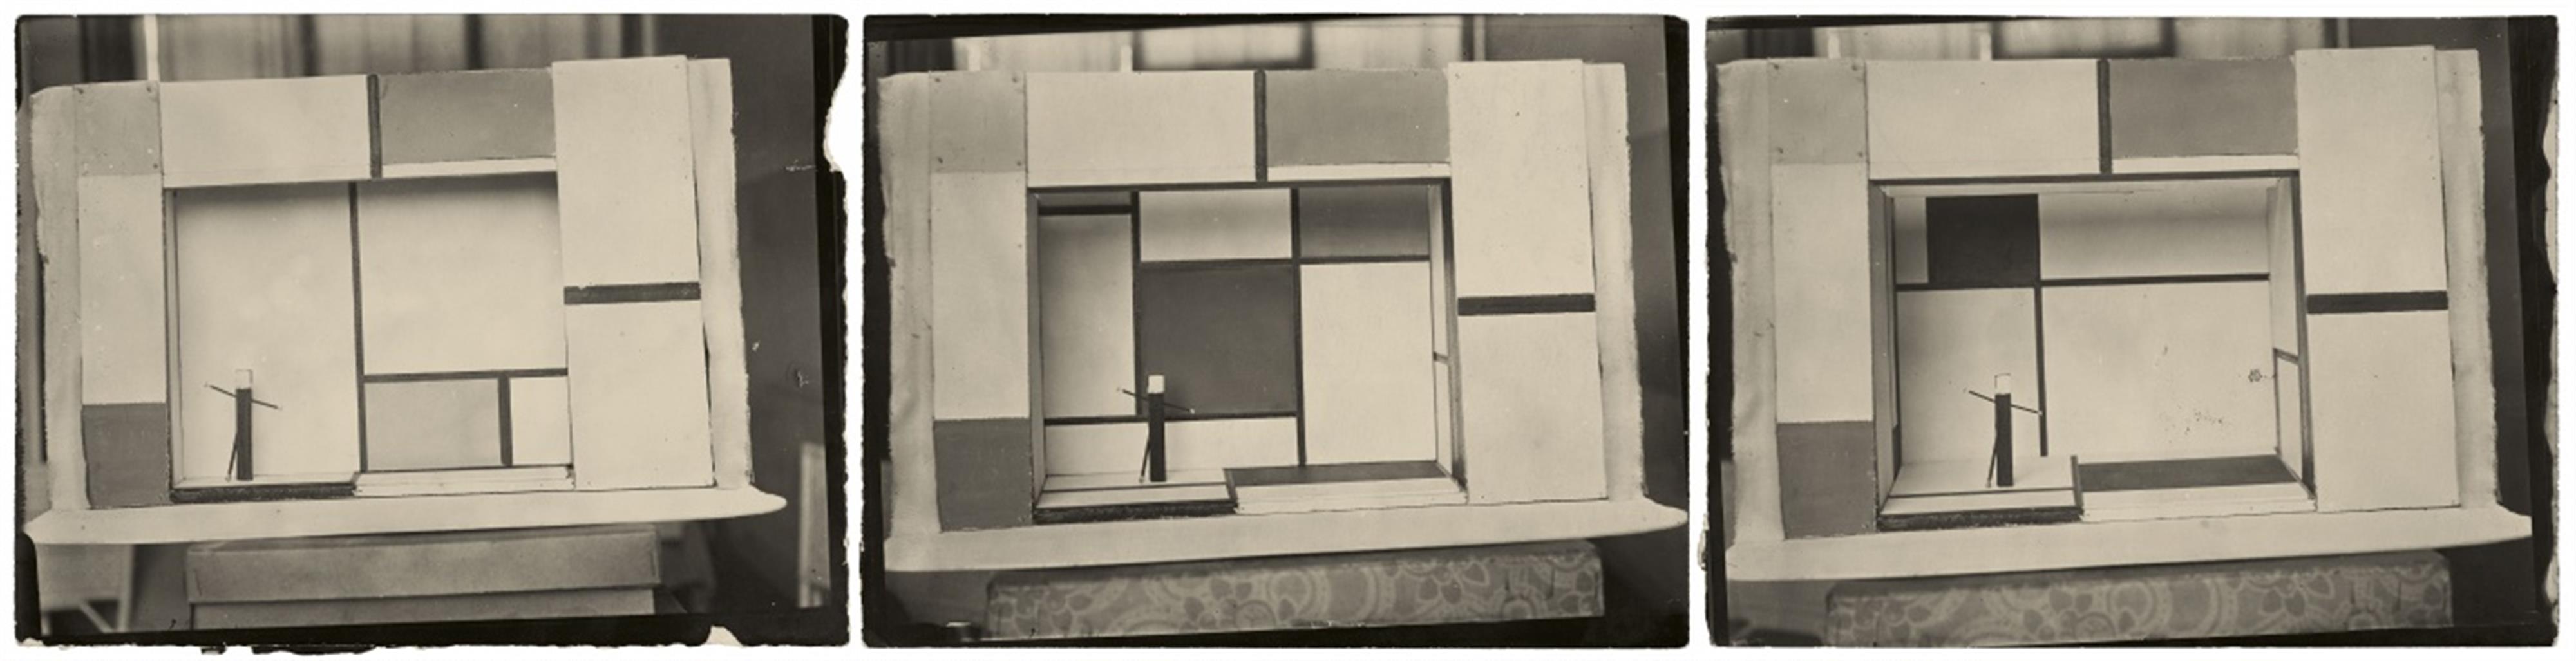 André Kertész - Drei Bühnenentwürfe von Piet Mondrian für 'L'éphémère est éternel' - image-4